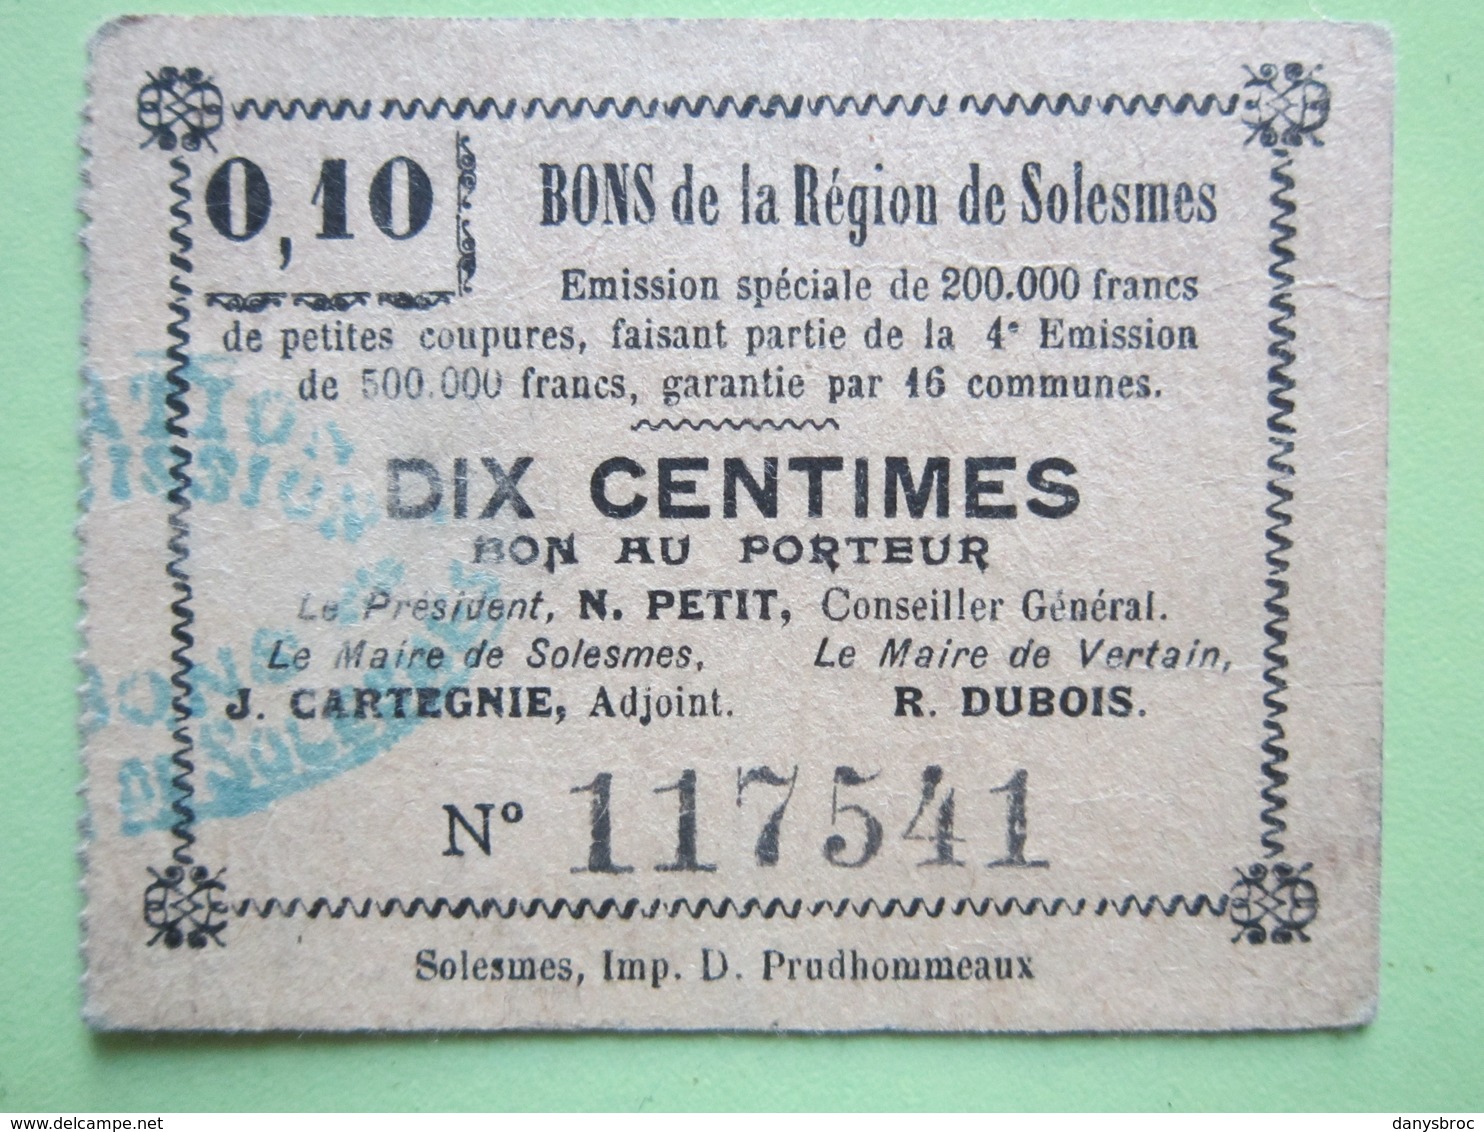 Bon De Nécessité De La Région De Solesmes (59) DIX CENTIMES - Le Maire De Vertain R.DUBOIS (59) 1914-1918 - Bons & Nécessité